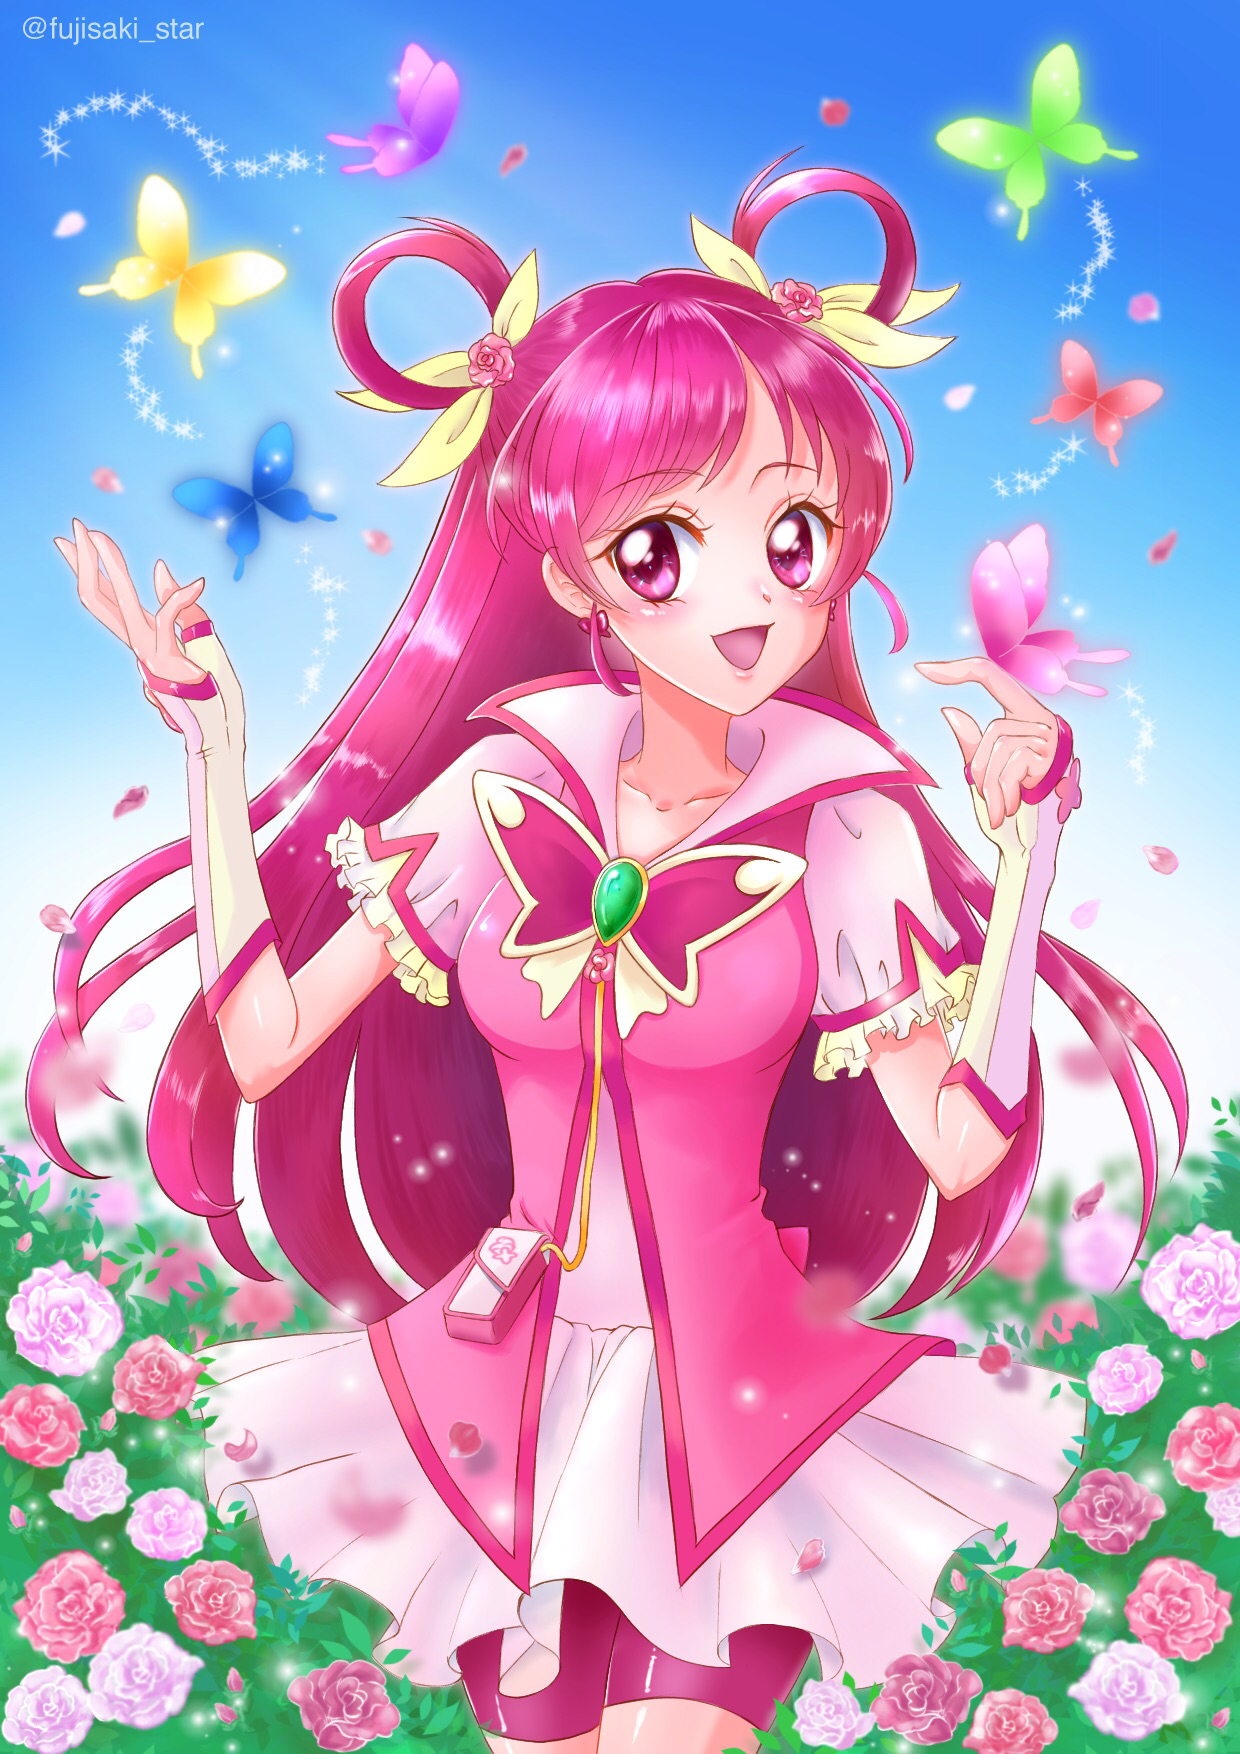 Yes Pretty Cure 5 Cure Dream Yumehara Nozomi Anime Anime Girls Magical Girls Long Hair Pink Hair Pre 1240x1754